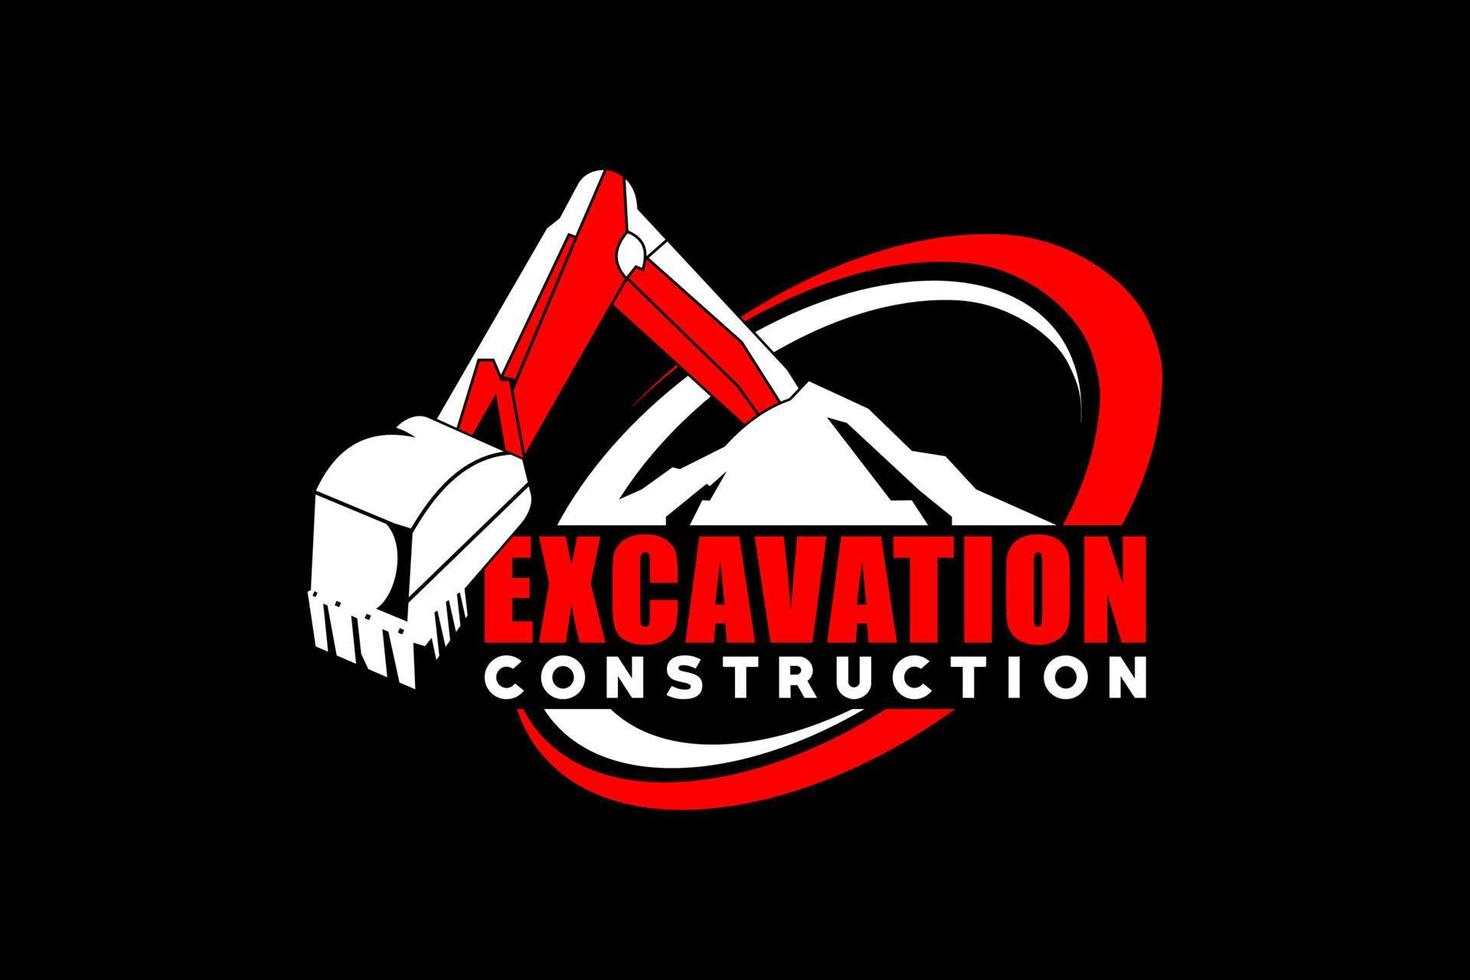 Excavator heavy equipment construction vector. vector